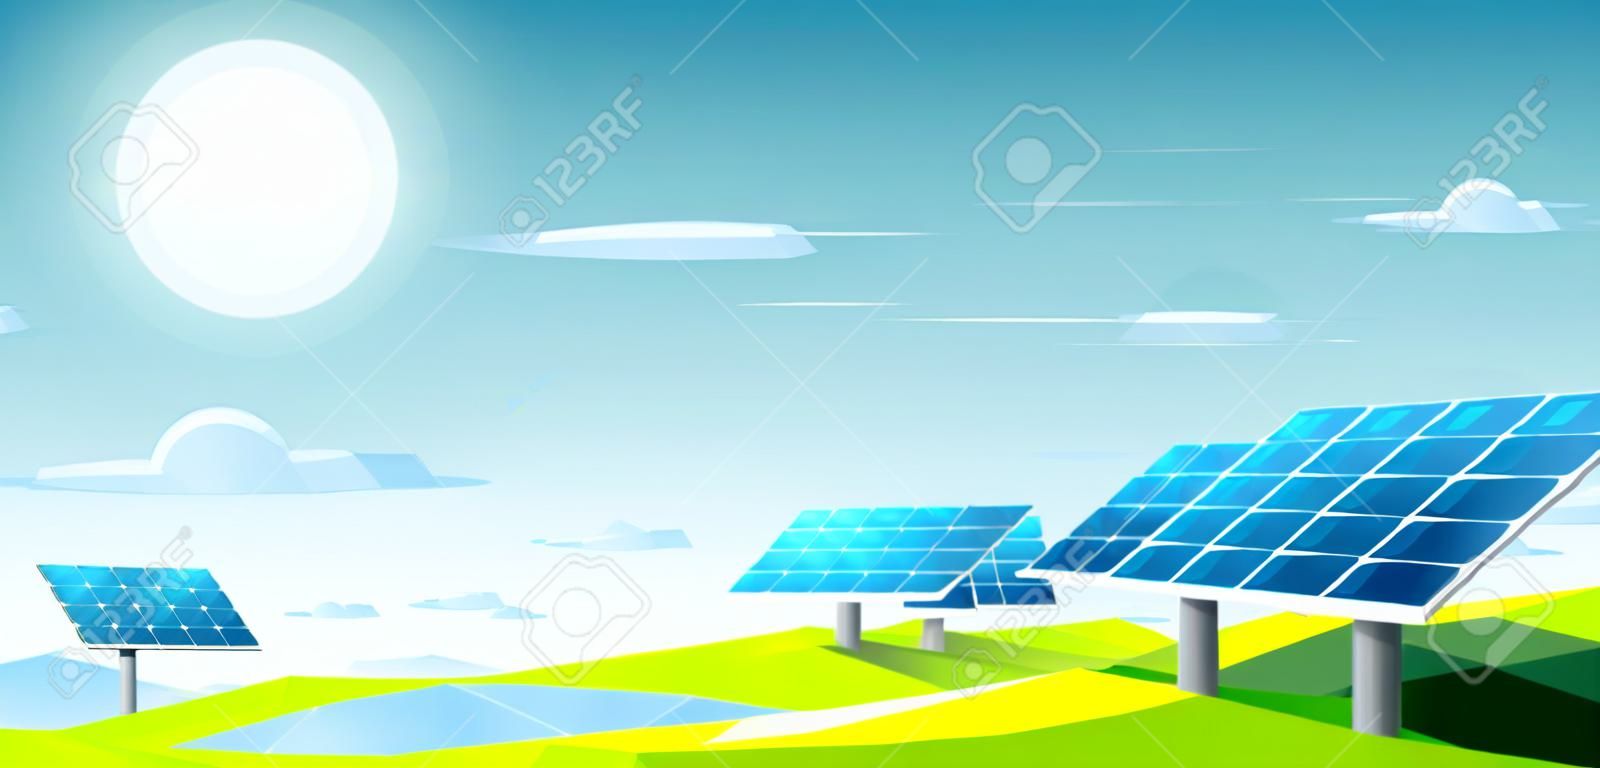 Paisagem poligonal com painéis solares sob o calor do sol para uso energético. Conceito ecológico.